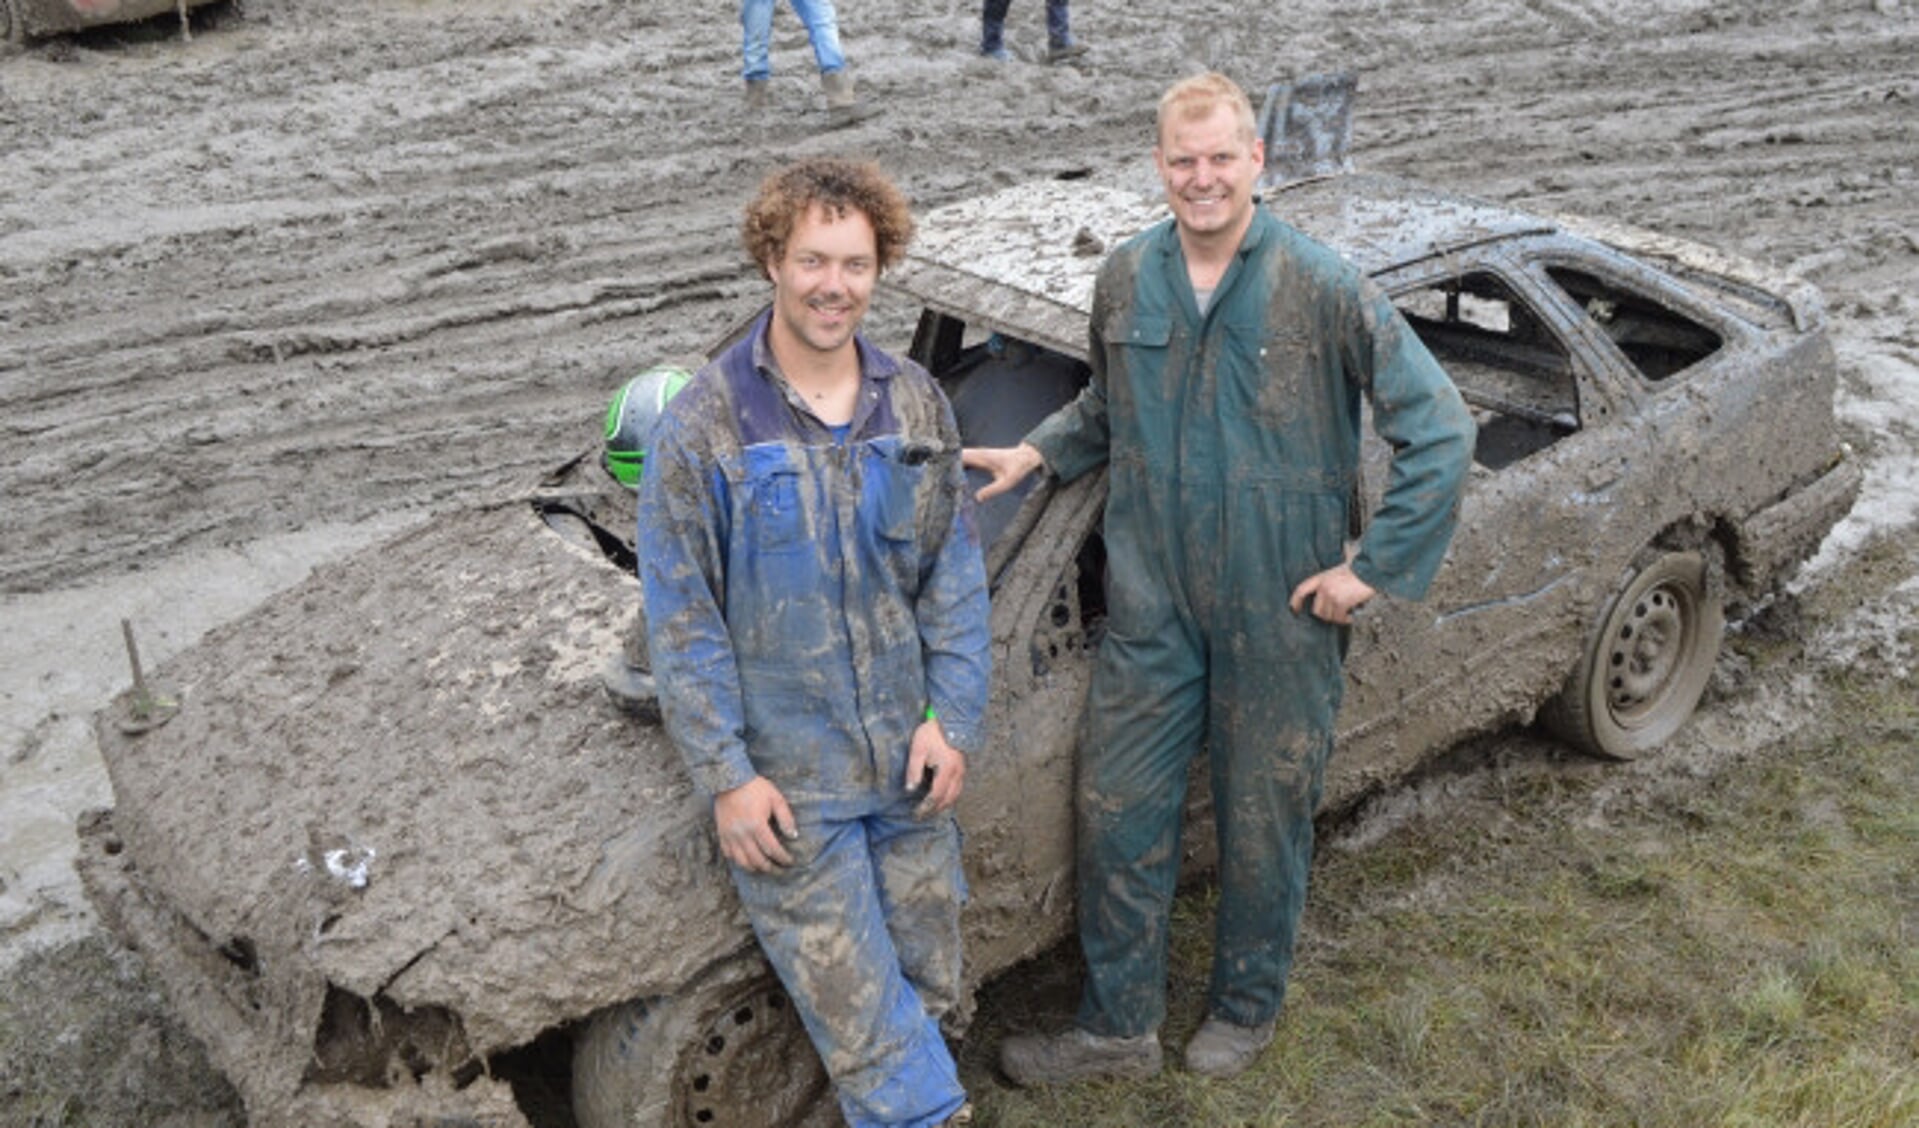  Bas van den Dries en Edwin Buijnink bij hun Ford Sierra in de modder.